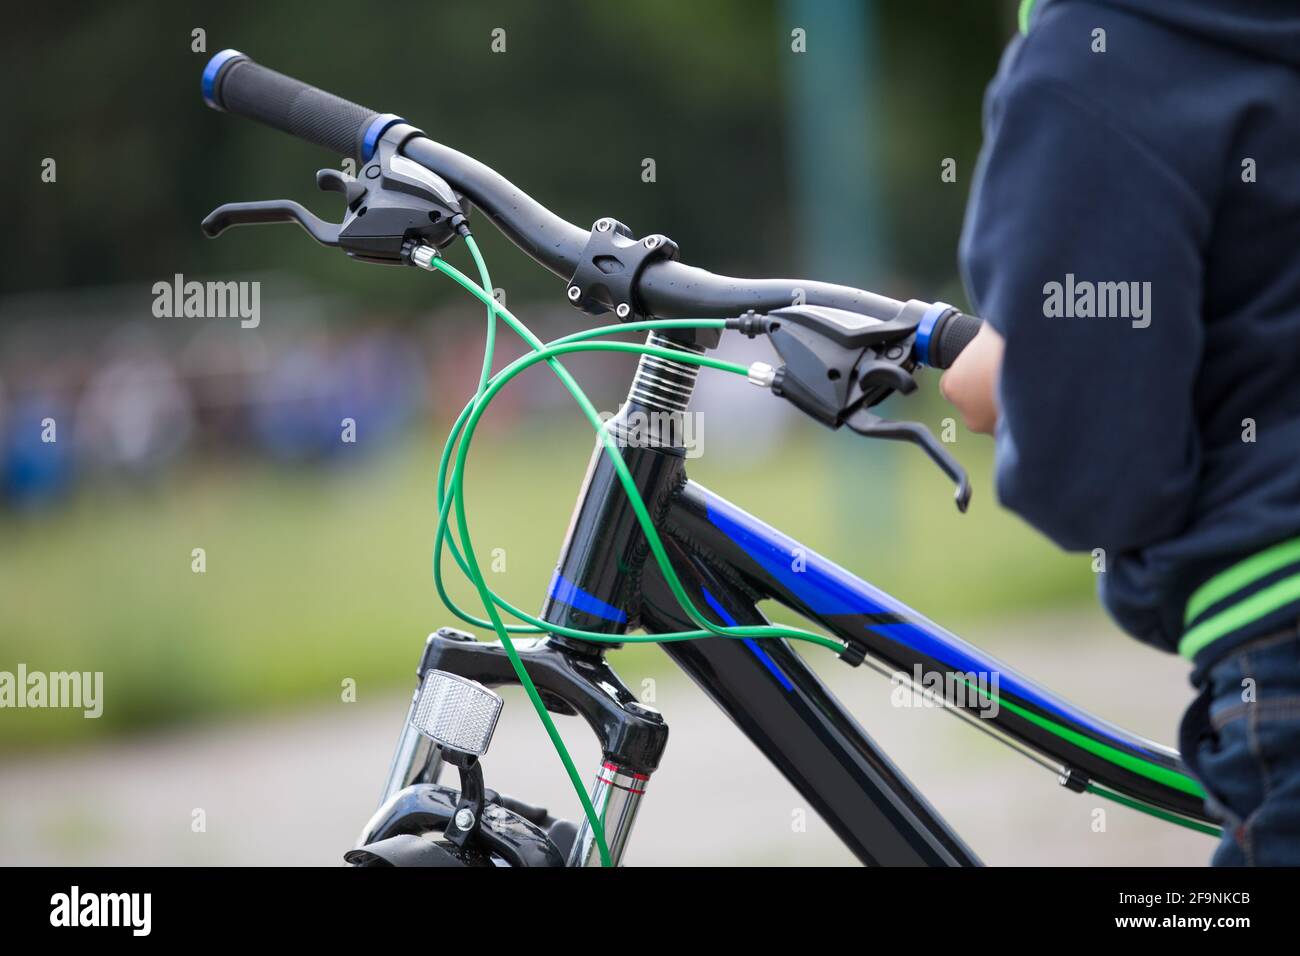 Fahrrad mit Gangschaltung, Bremsen und Lenker Stockfotografie - Alamy